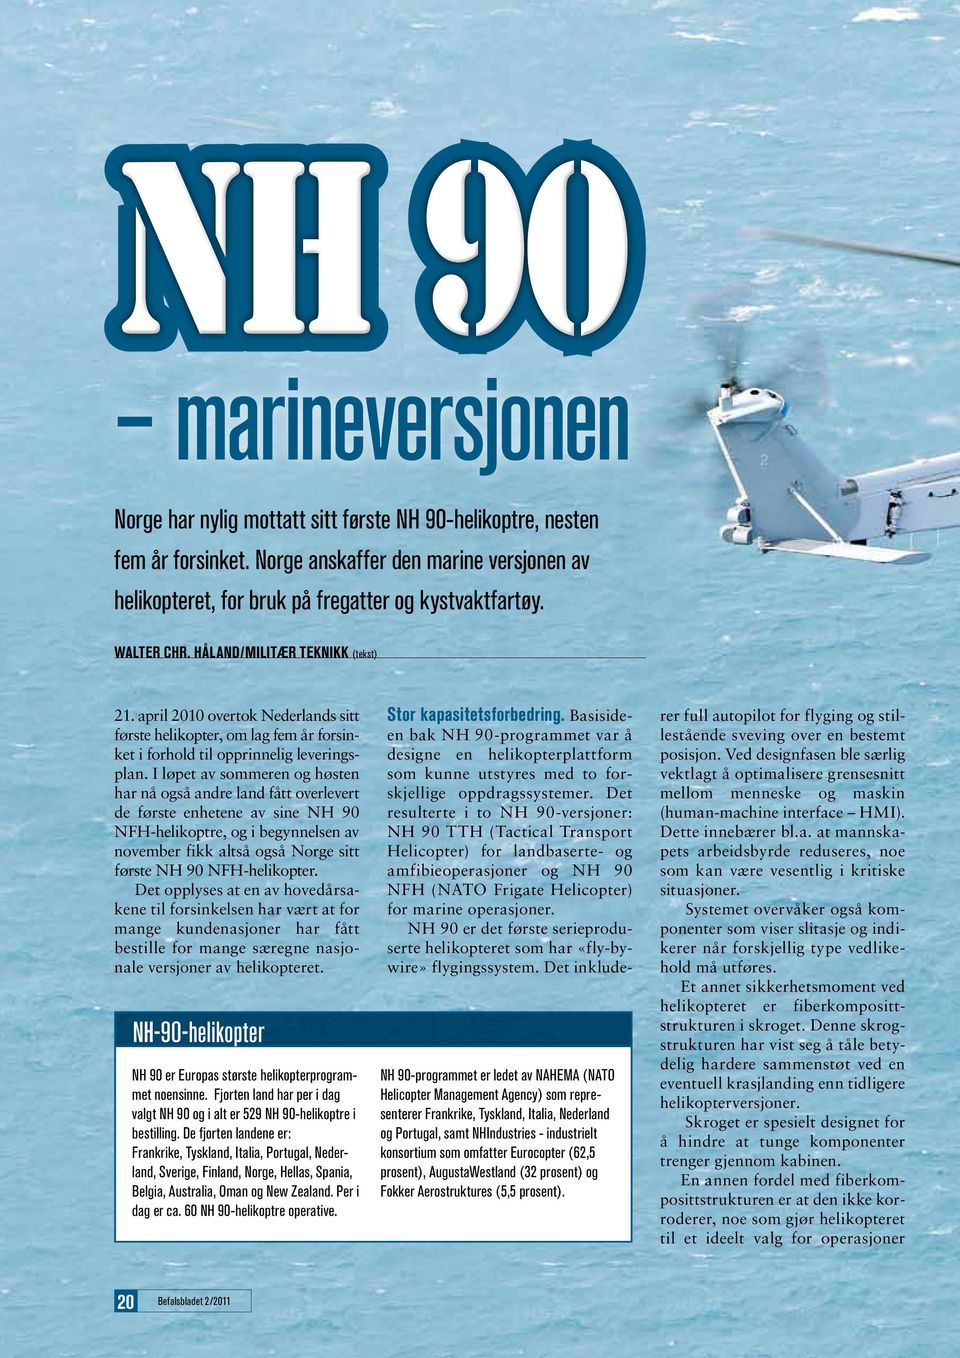 I løpet av sommeren og høsten har nå også andre land fått overlevert de første enhetene av sine NH 90 NFH-helikoptre, og i begynnelsen av november fikk altså også Norge sitt første NH 90